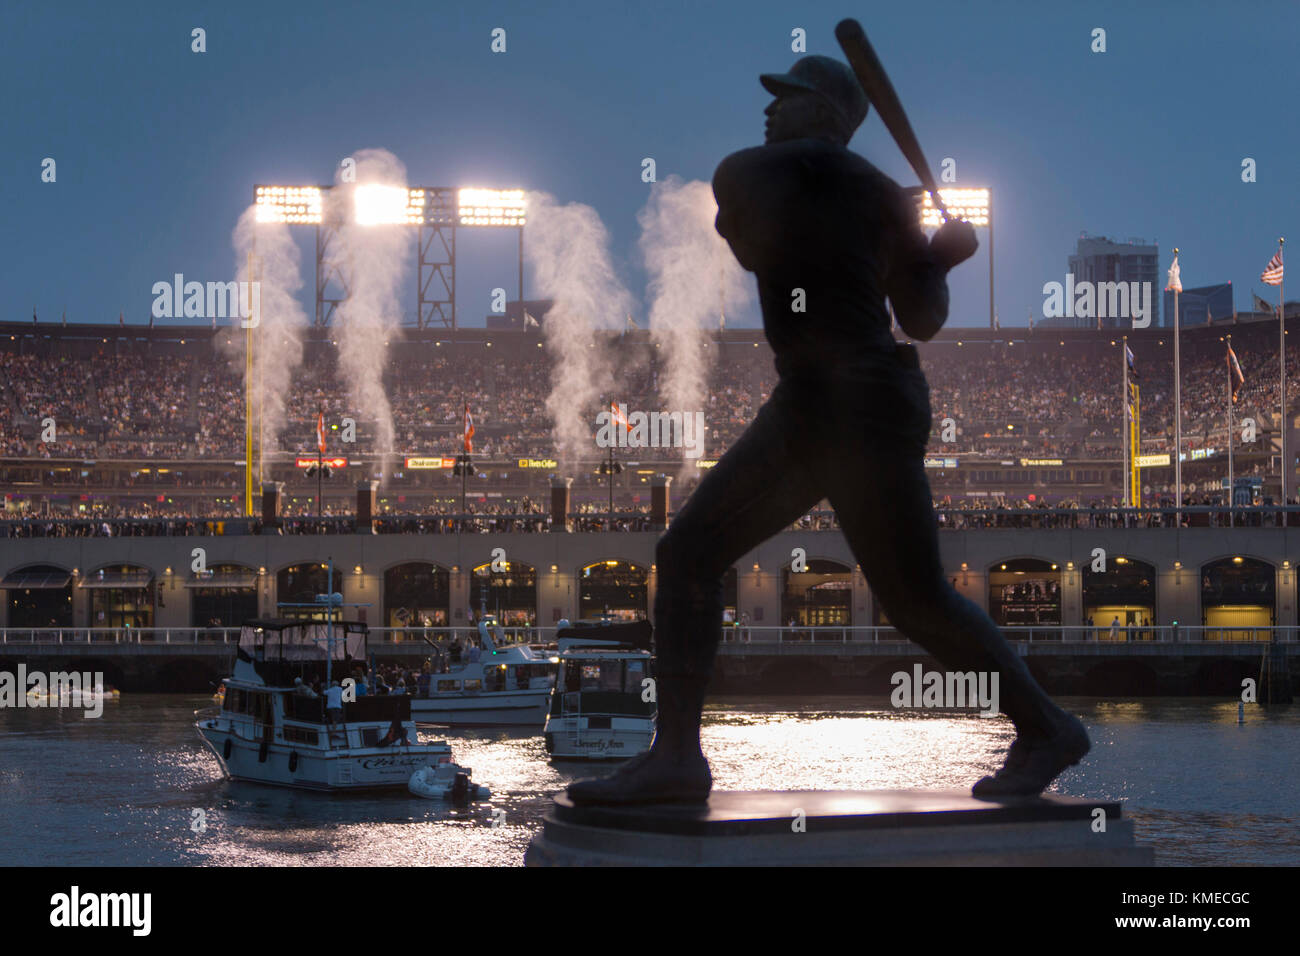 ATT Ballpark, home of San Francisco Giants baseball team, San Francisco, California, USA Stock Photo